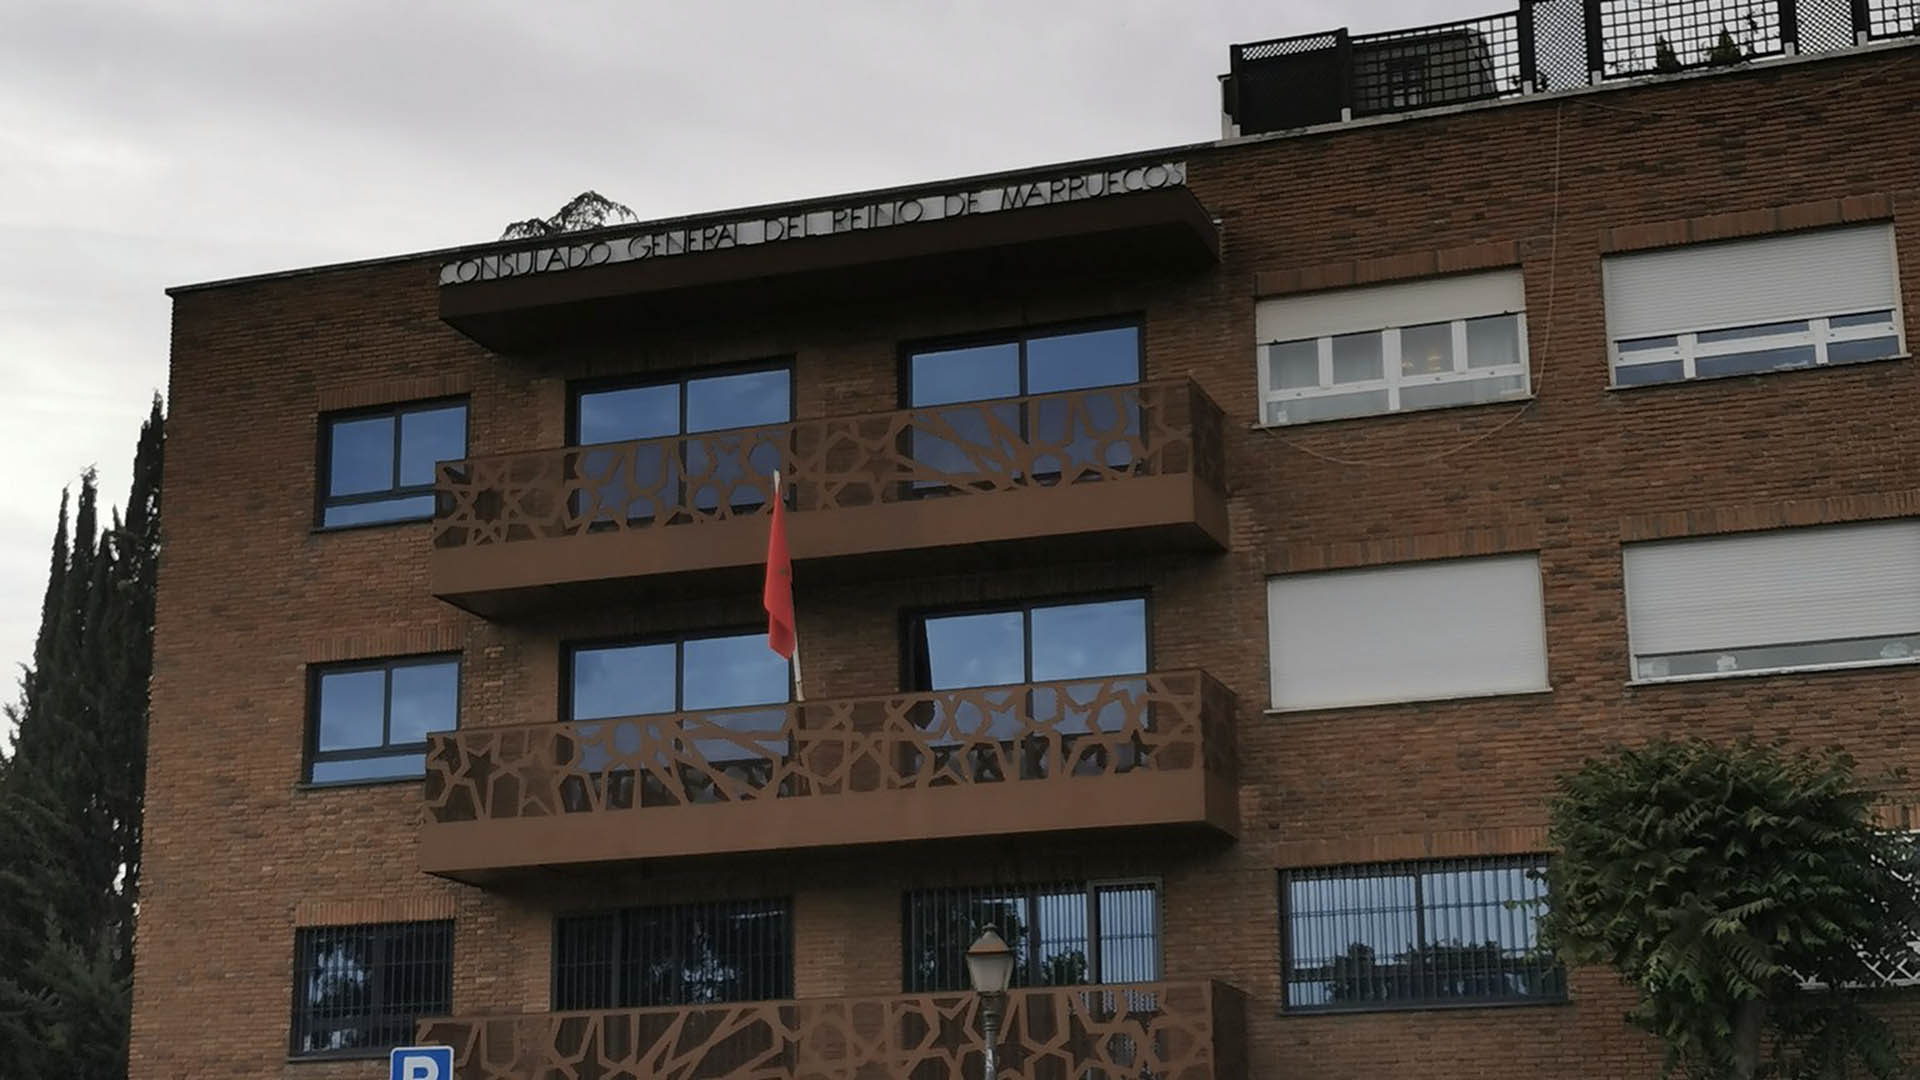 Un hombre se prendió fuego en el Consulado de Marruecos en Madrid: se encuentra en estado grave